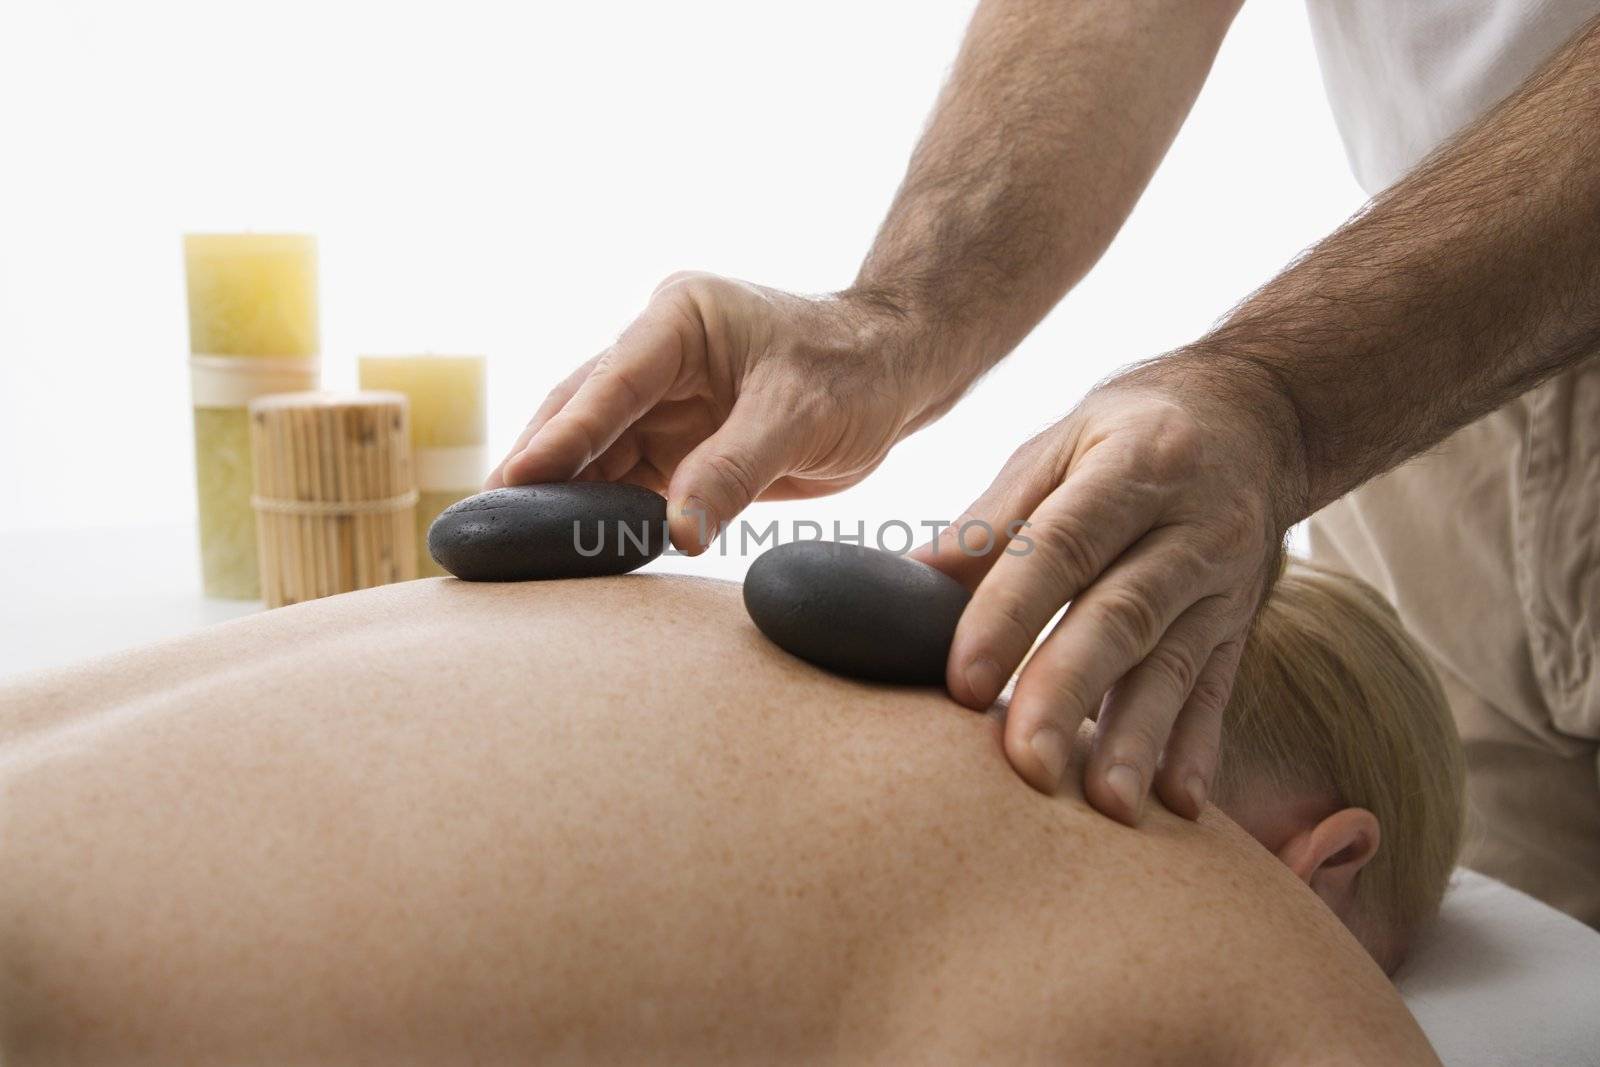 Hot stone massage. by iofoto